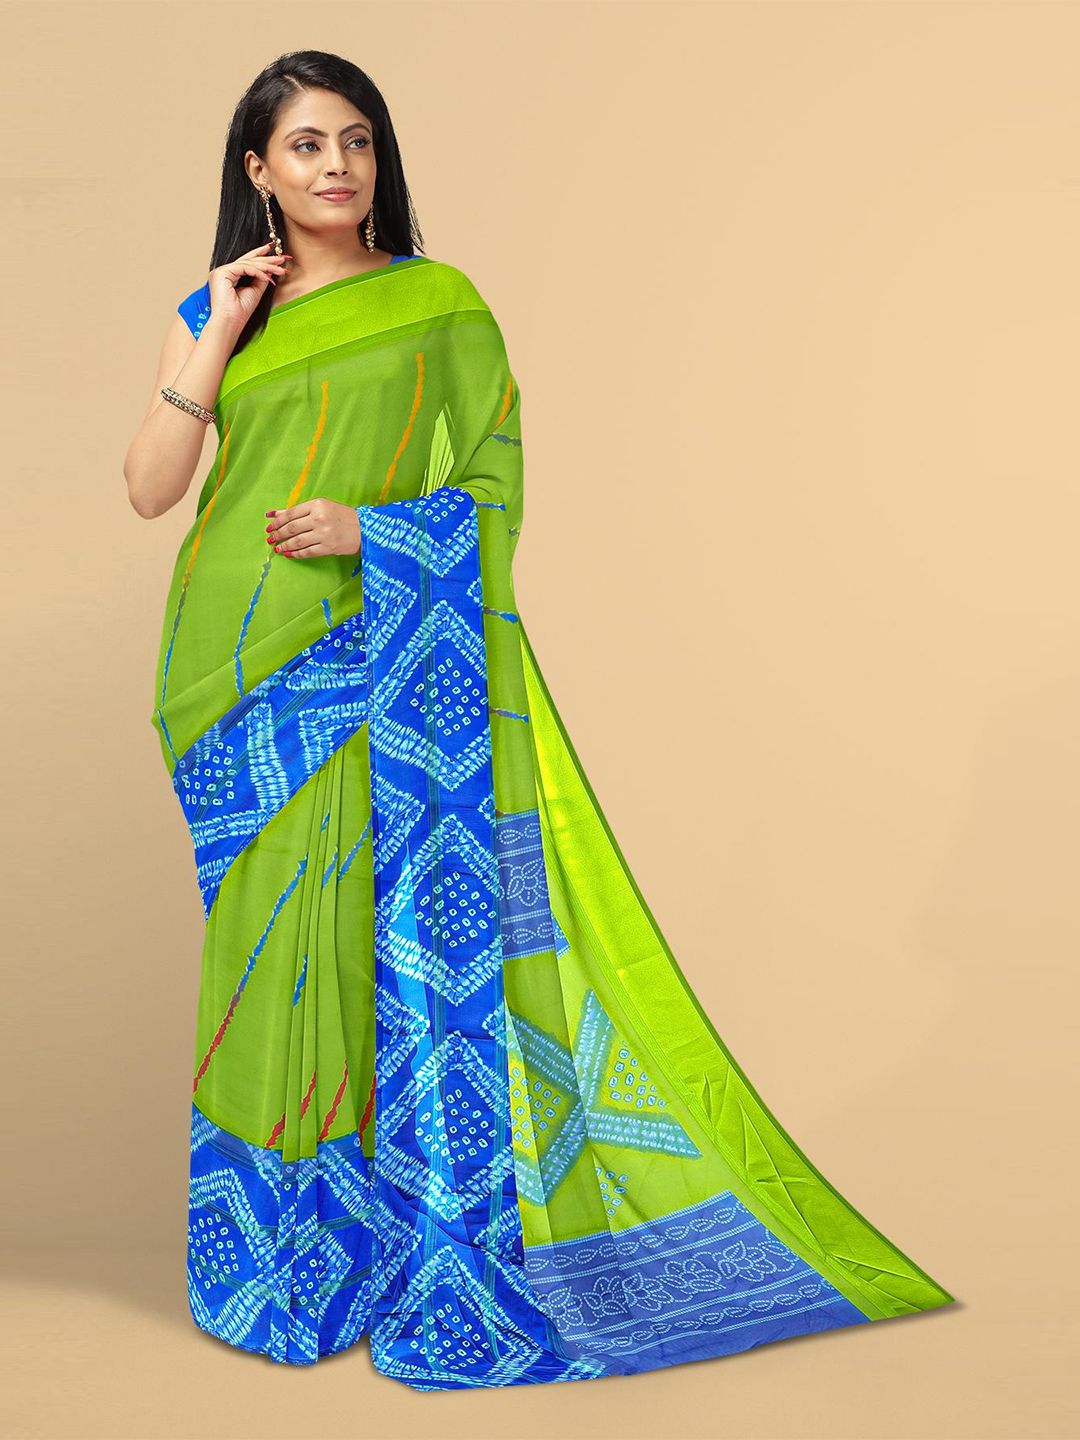 Kalamandir Women Green & Blue Ethnic Motifs Printed Shibori Saree Price in India